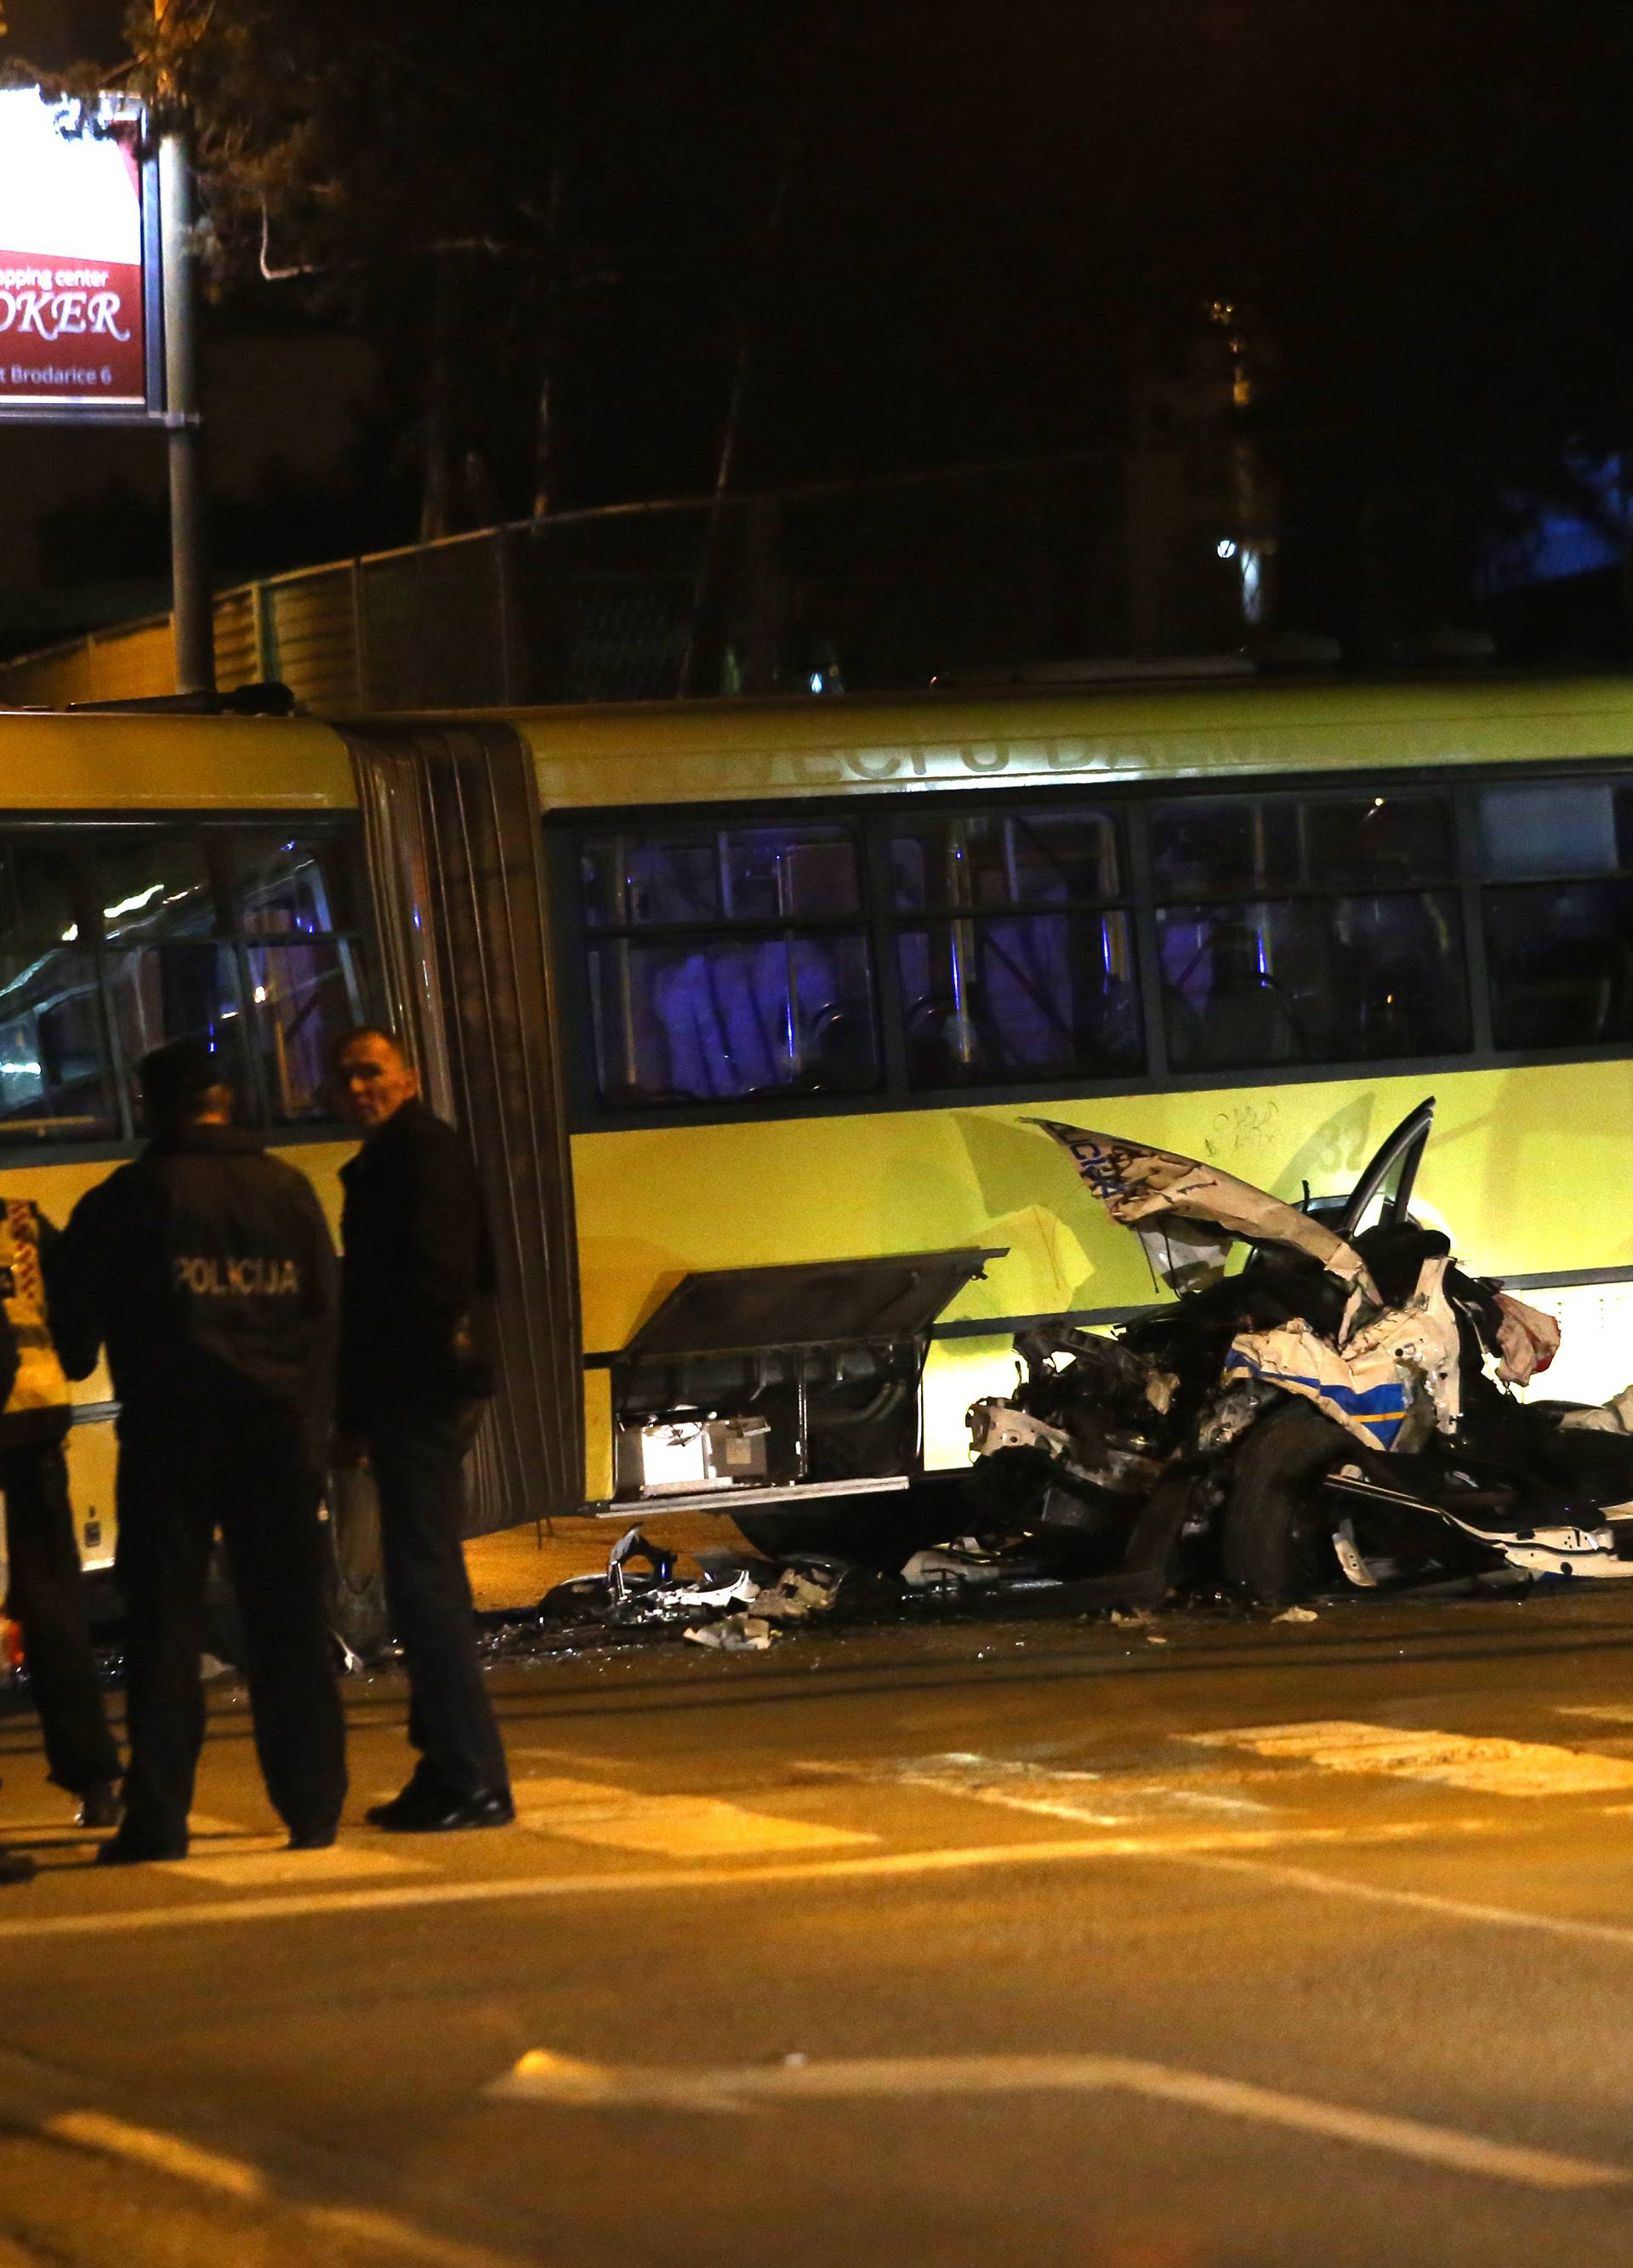 Policijskim autom se zabili u autobus, dvojica su ozlijeđena